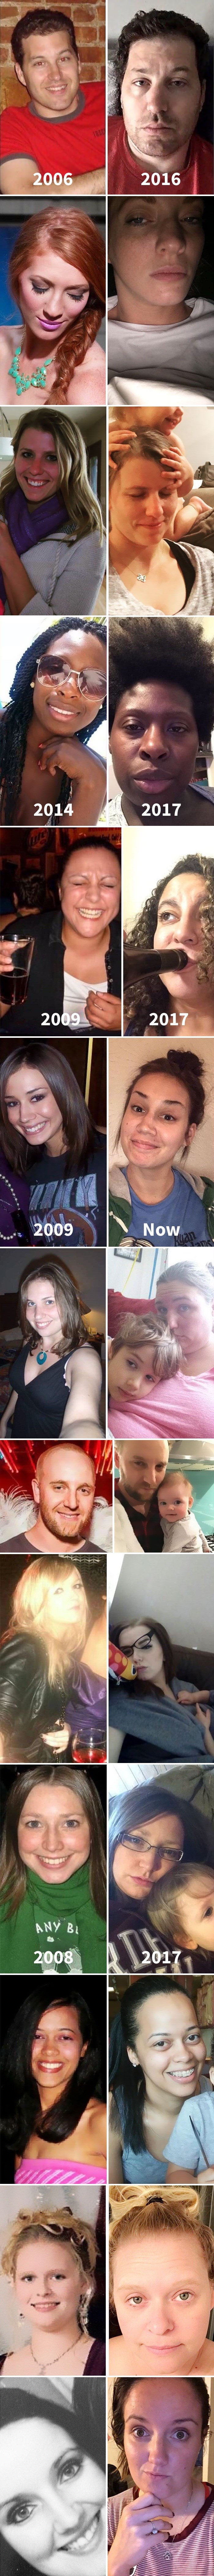 Mame i tate su objavili svoje fotke prije i nakon što su dobili djecu - što primjećujete na novim slikama?